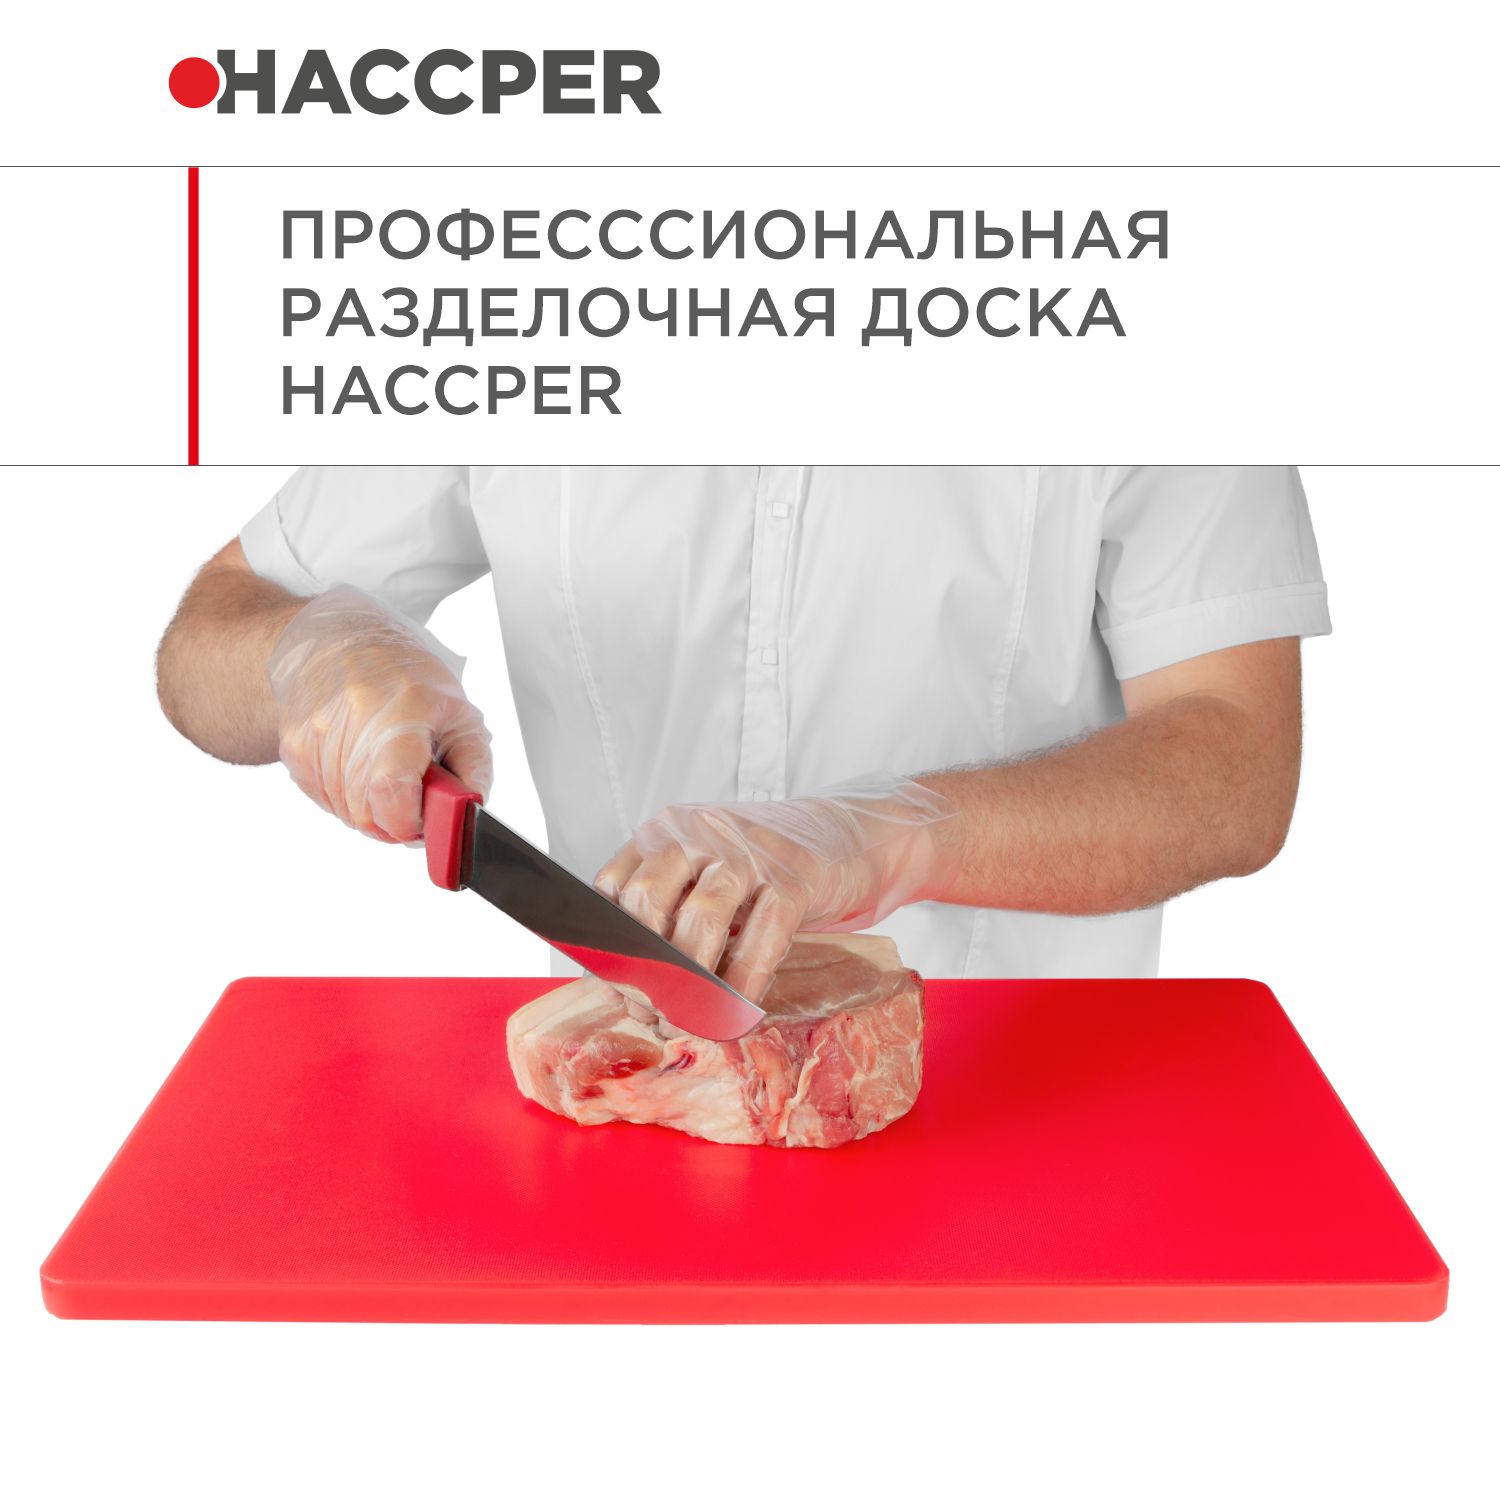 Профессиональная разделочная доска  HACCPER Gastra, красная